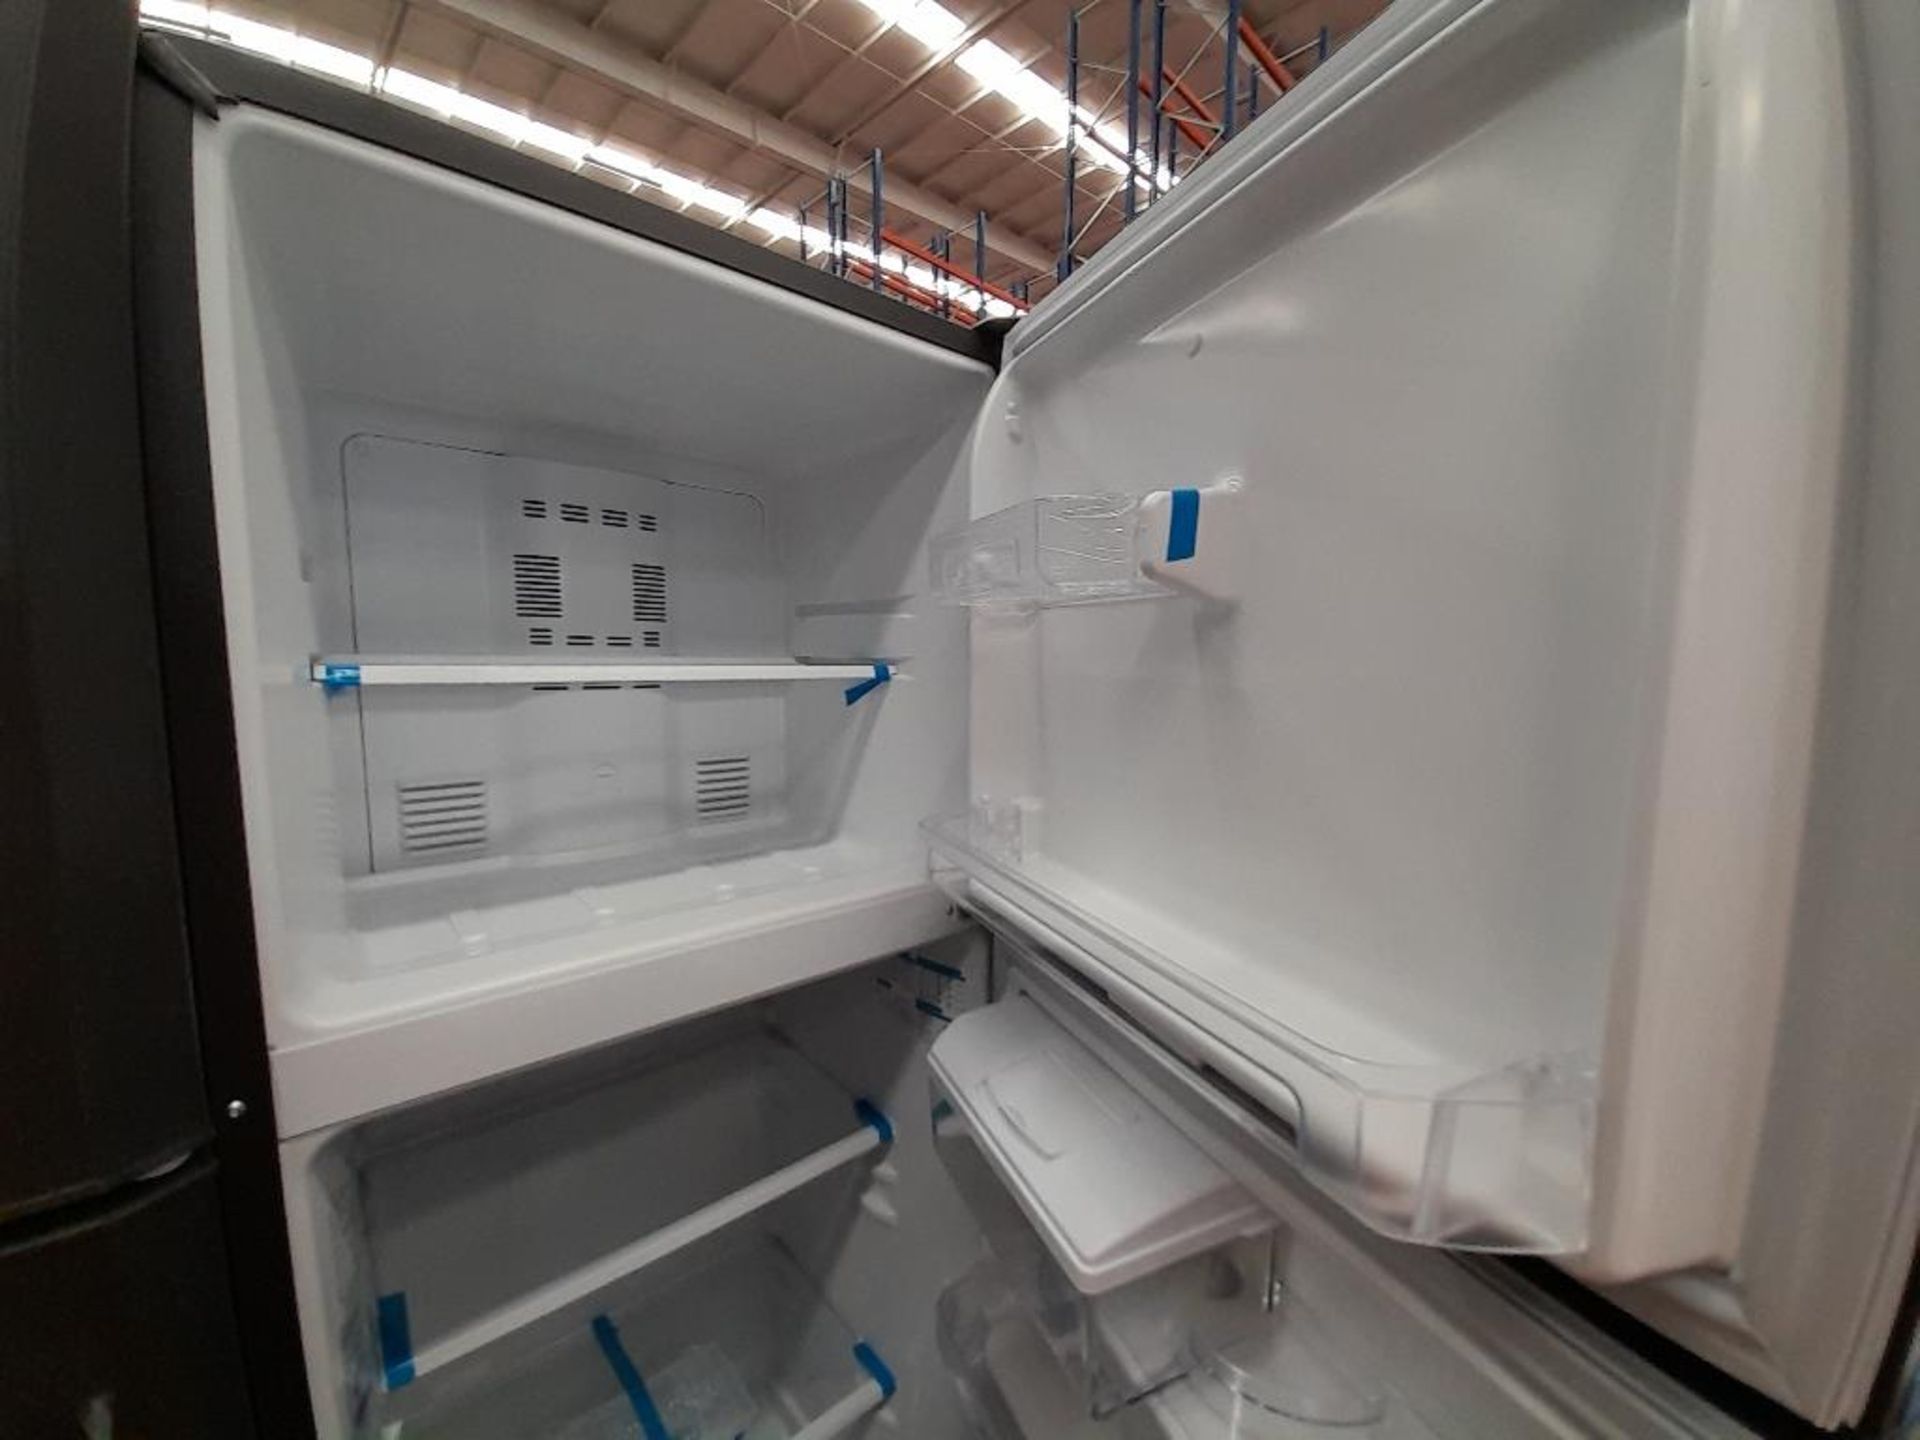 Lote de 2 refrigeradores contiene: 1 Refrigerador Con Dispensador De Agua Marca MABE, Modelo RMA300 - Image 4 of 10